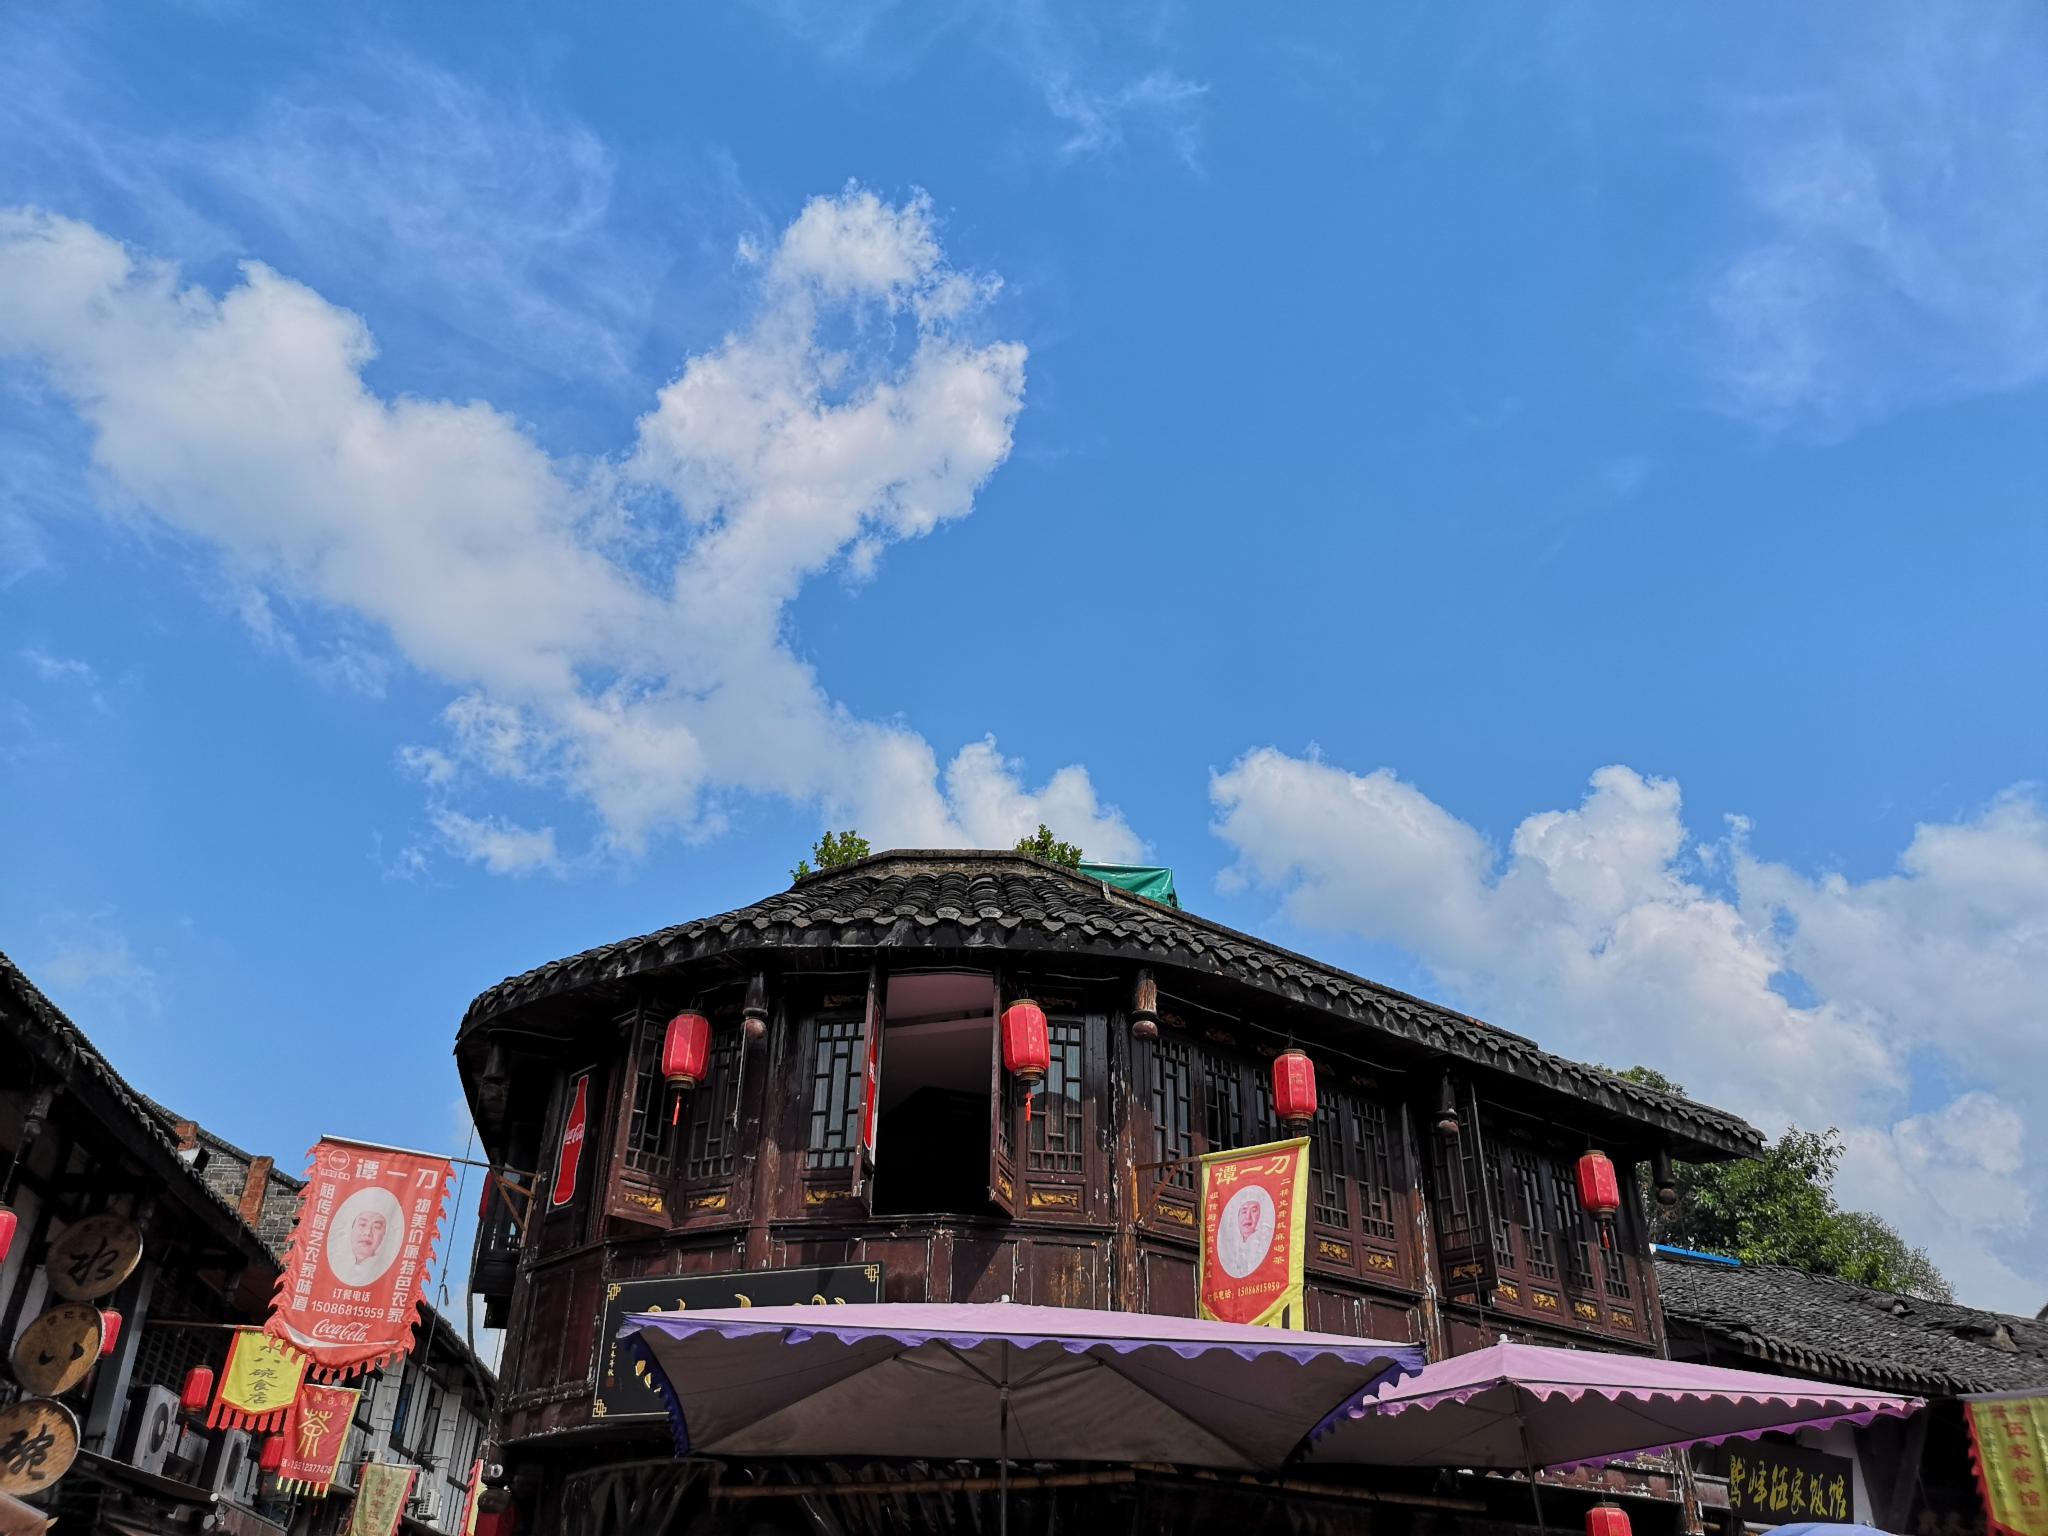 涞滩古镇位于重庆合川市城东的鹫峰山上渠江环绕融古庙古城古佛于一体